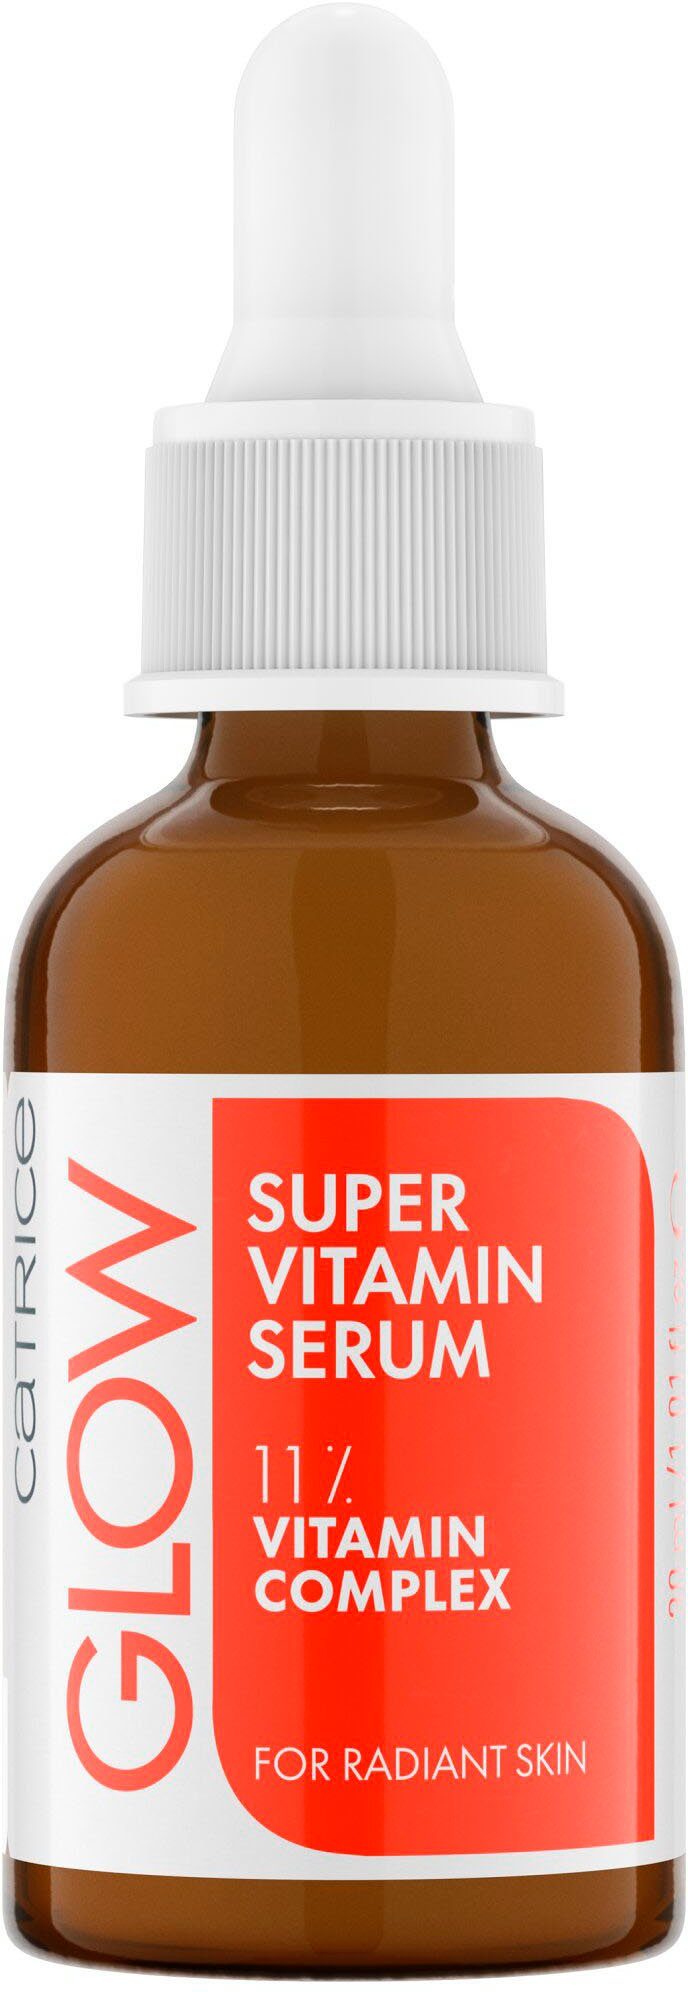 Vitamin Super Gesichtsserum Glow Serum Catrice